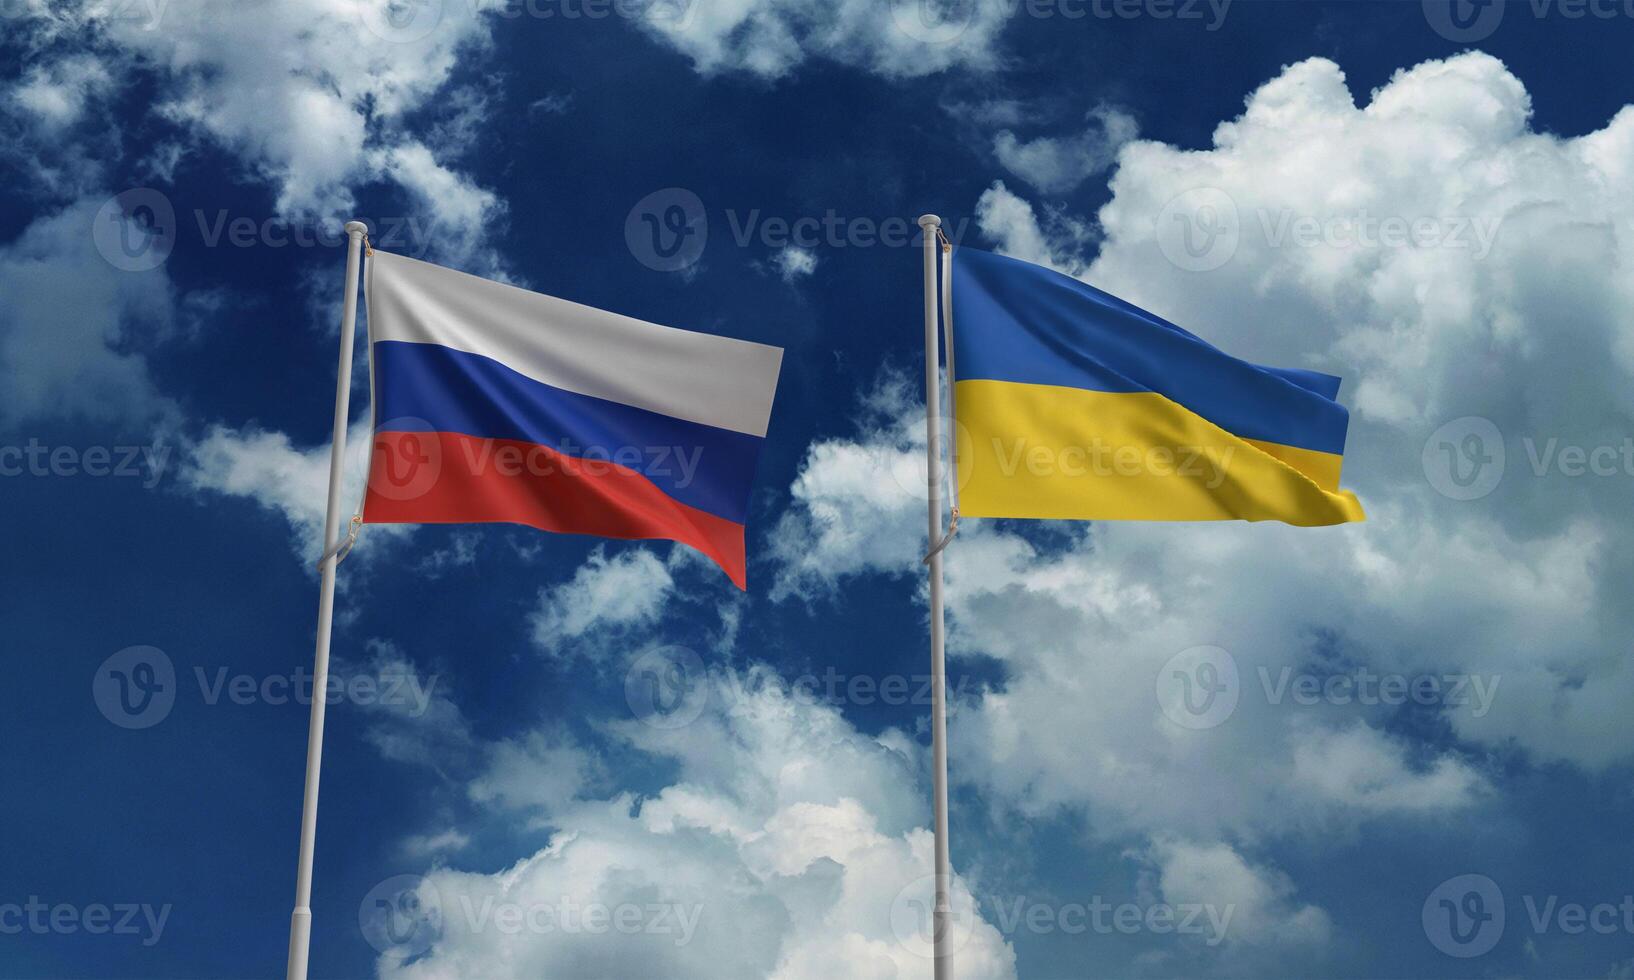 Oekraïne Rusland vlag Golf blauw wit bewolkt achtergrond behang kopiëren ruimte conflict politiek leger crisis strijd regering oekraïens vrijheid agressie strijd economie onafhankelijkheid gevecht verwoesting foto